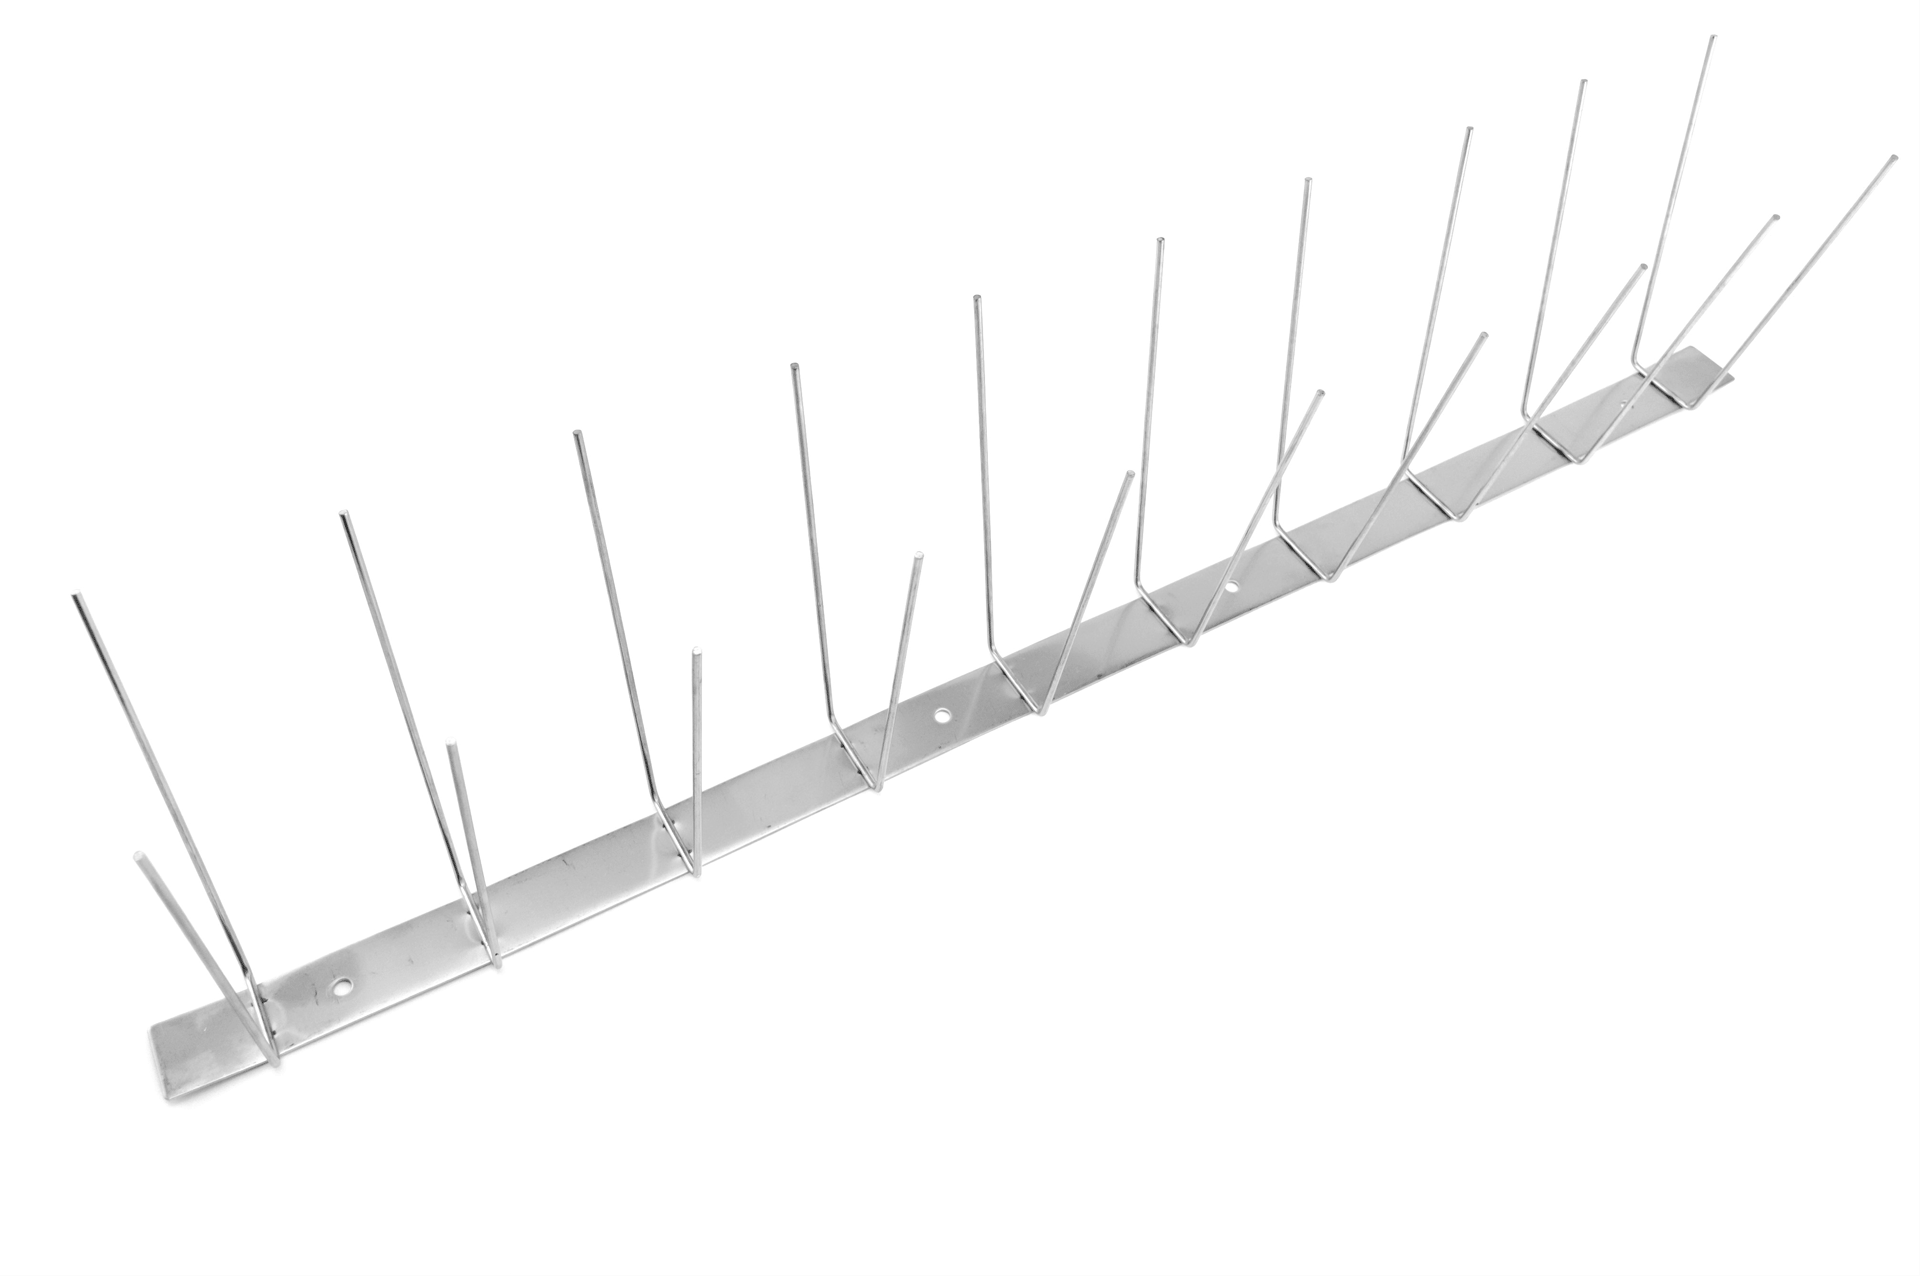 2 reihige Taubenabwehr-Spikes 50 cm lang aus Edelstahl